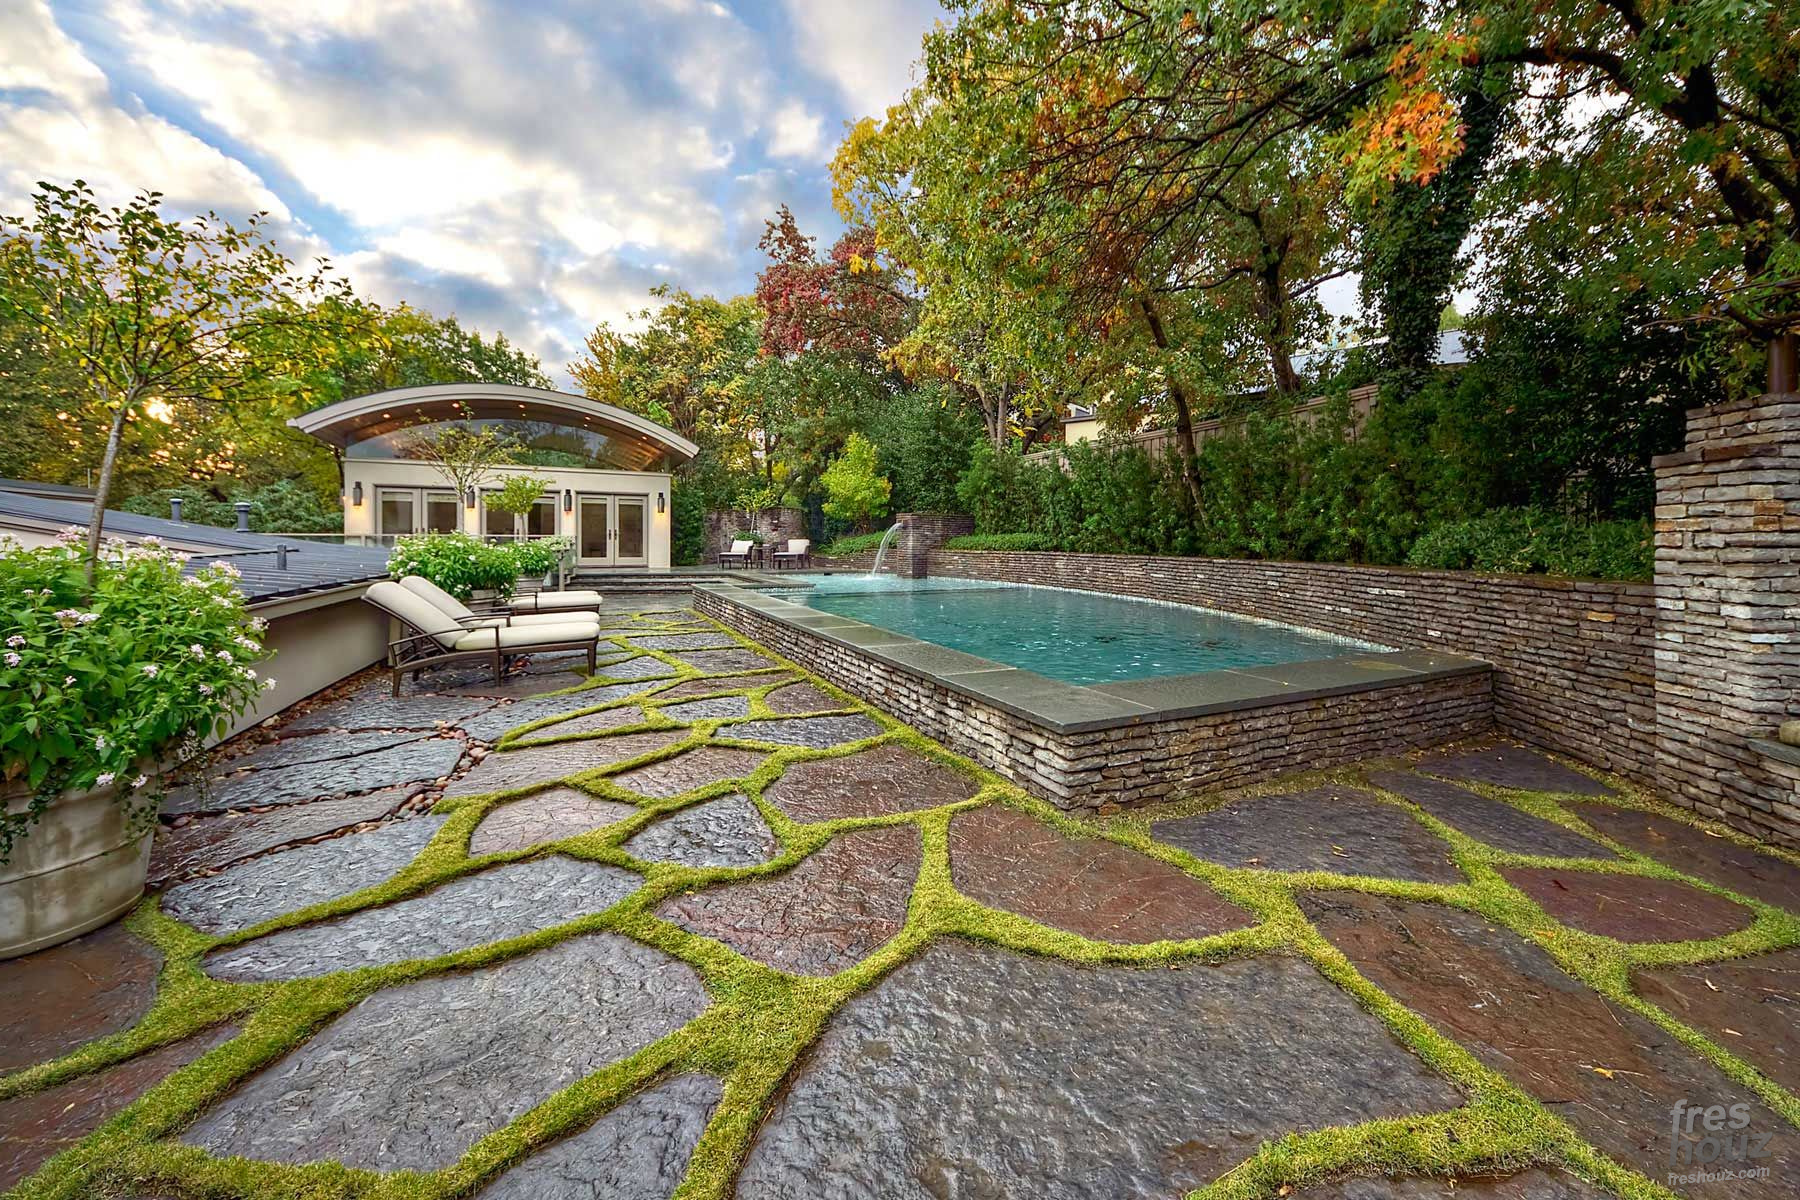 27 Stunning Modern Landscape Architecture Design